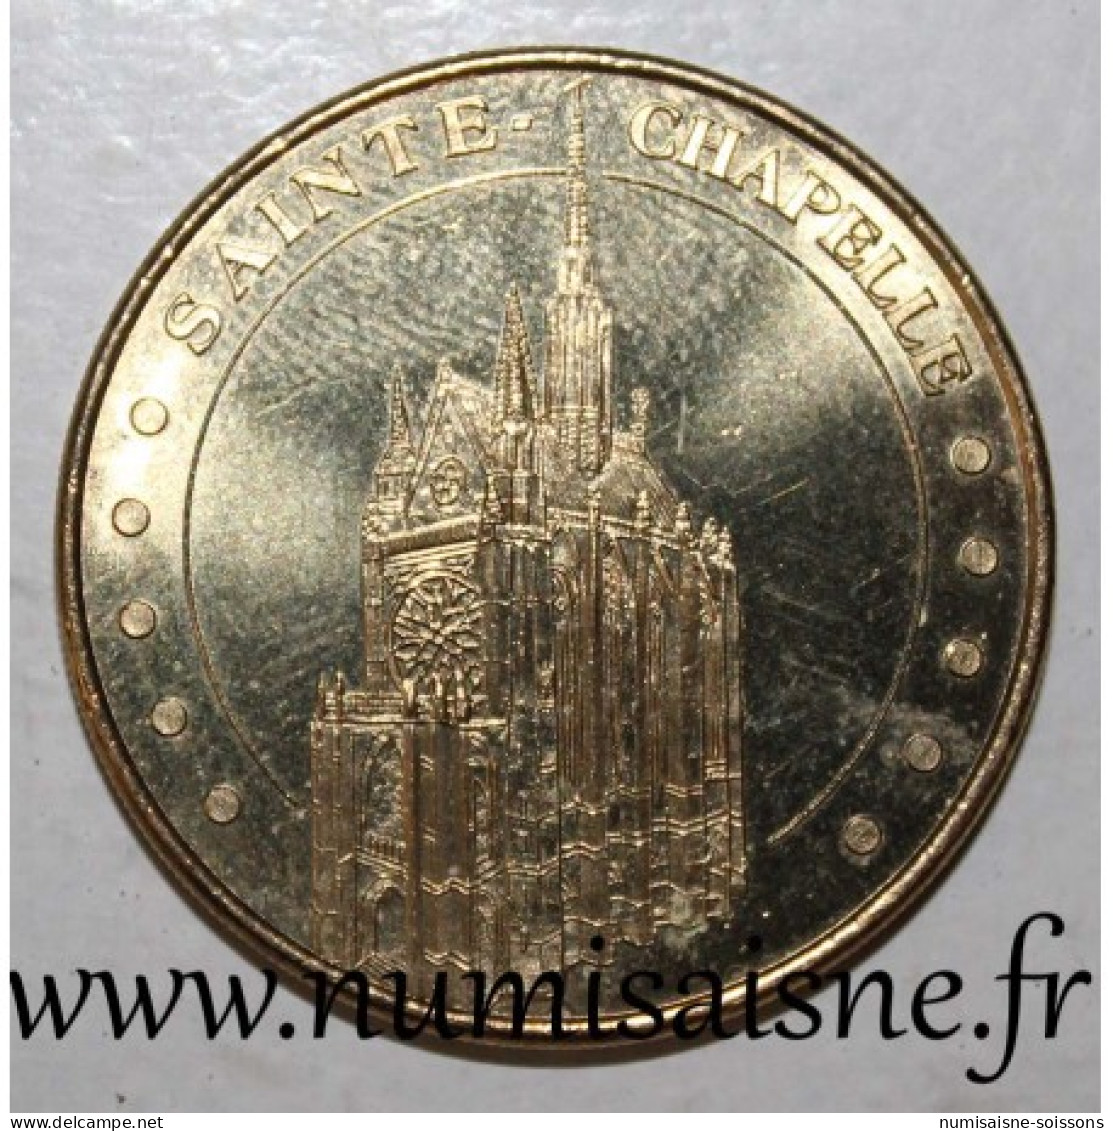 75 - PARIS - SAINTE CHAPELLE - C.M.N. - Monnaie De Paris - 2014 - 2014